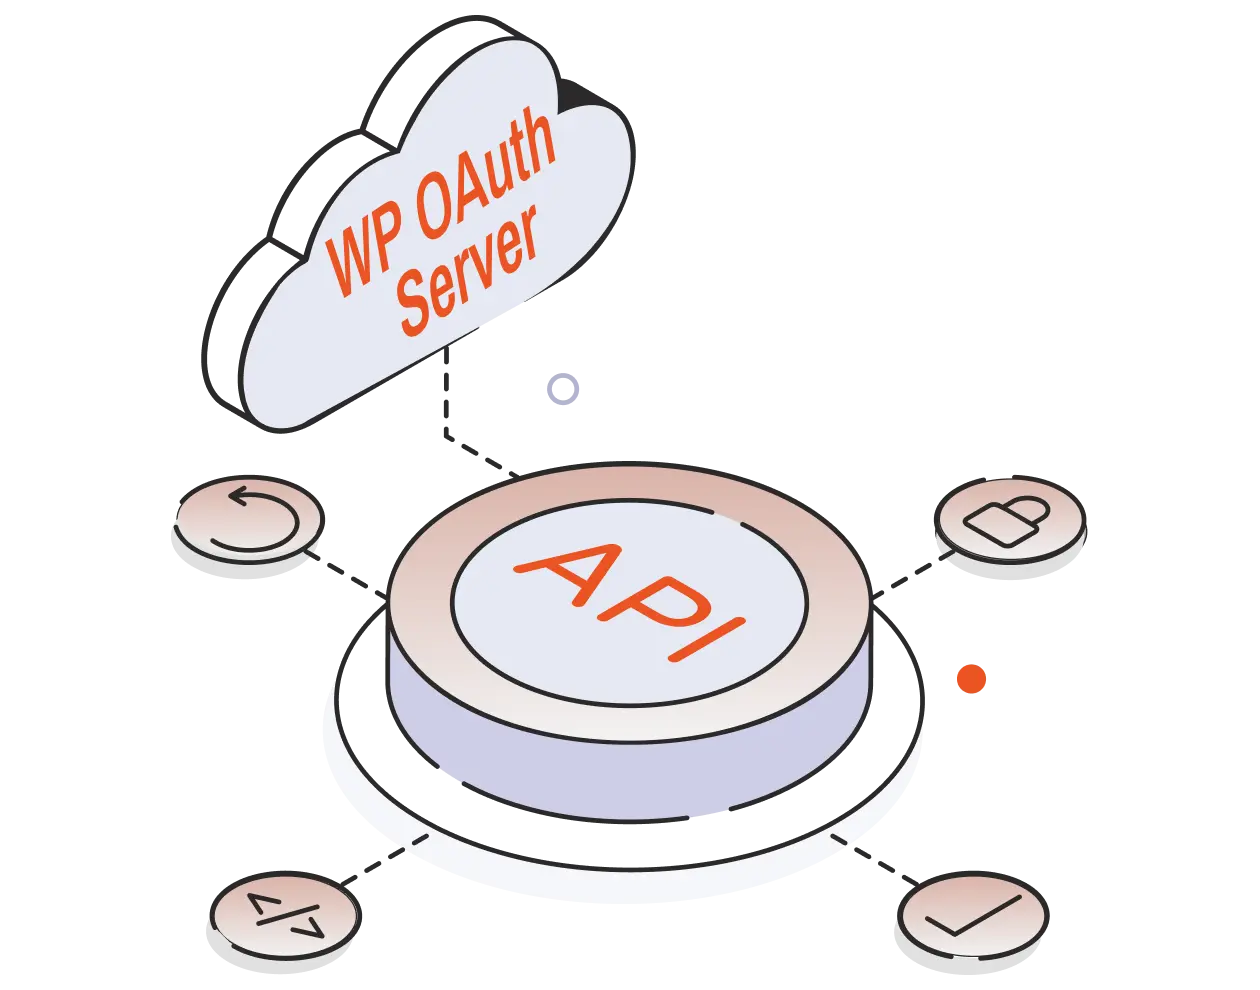 Intégration de l'authentification API Rest - Serveur WP OAuth